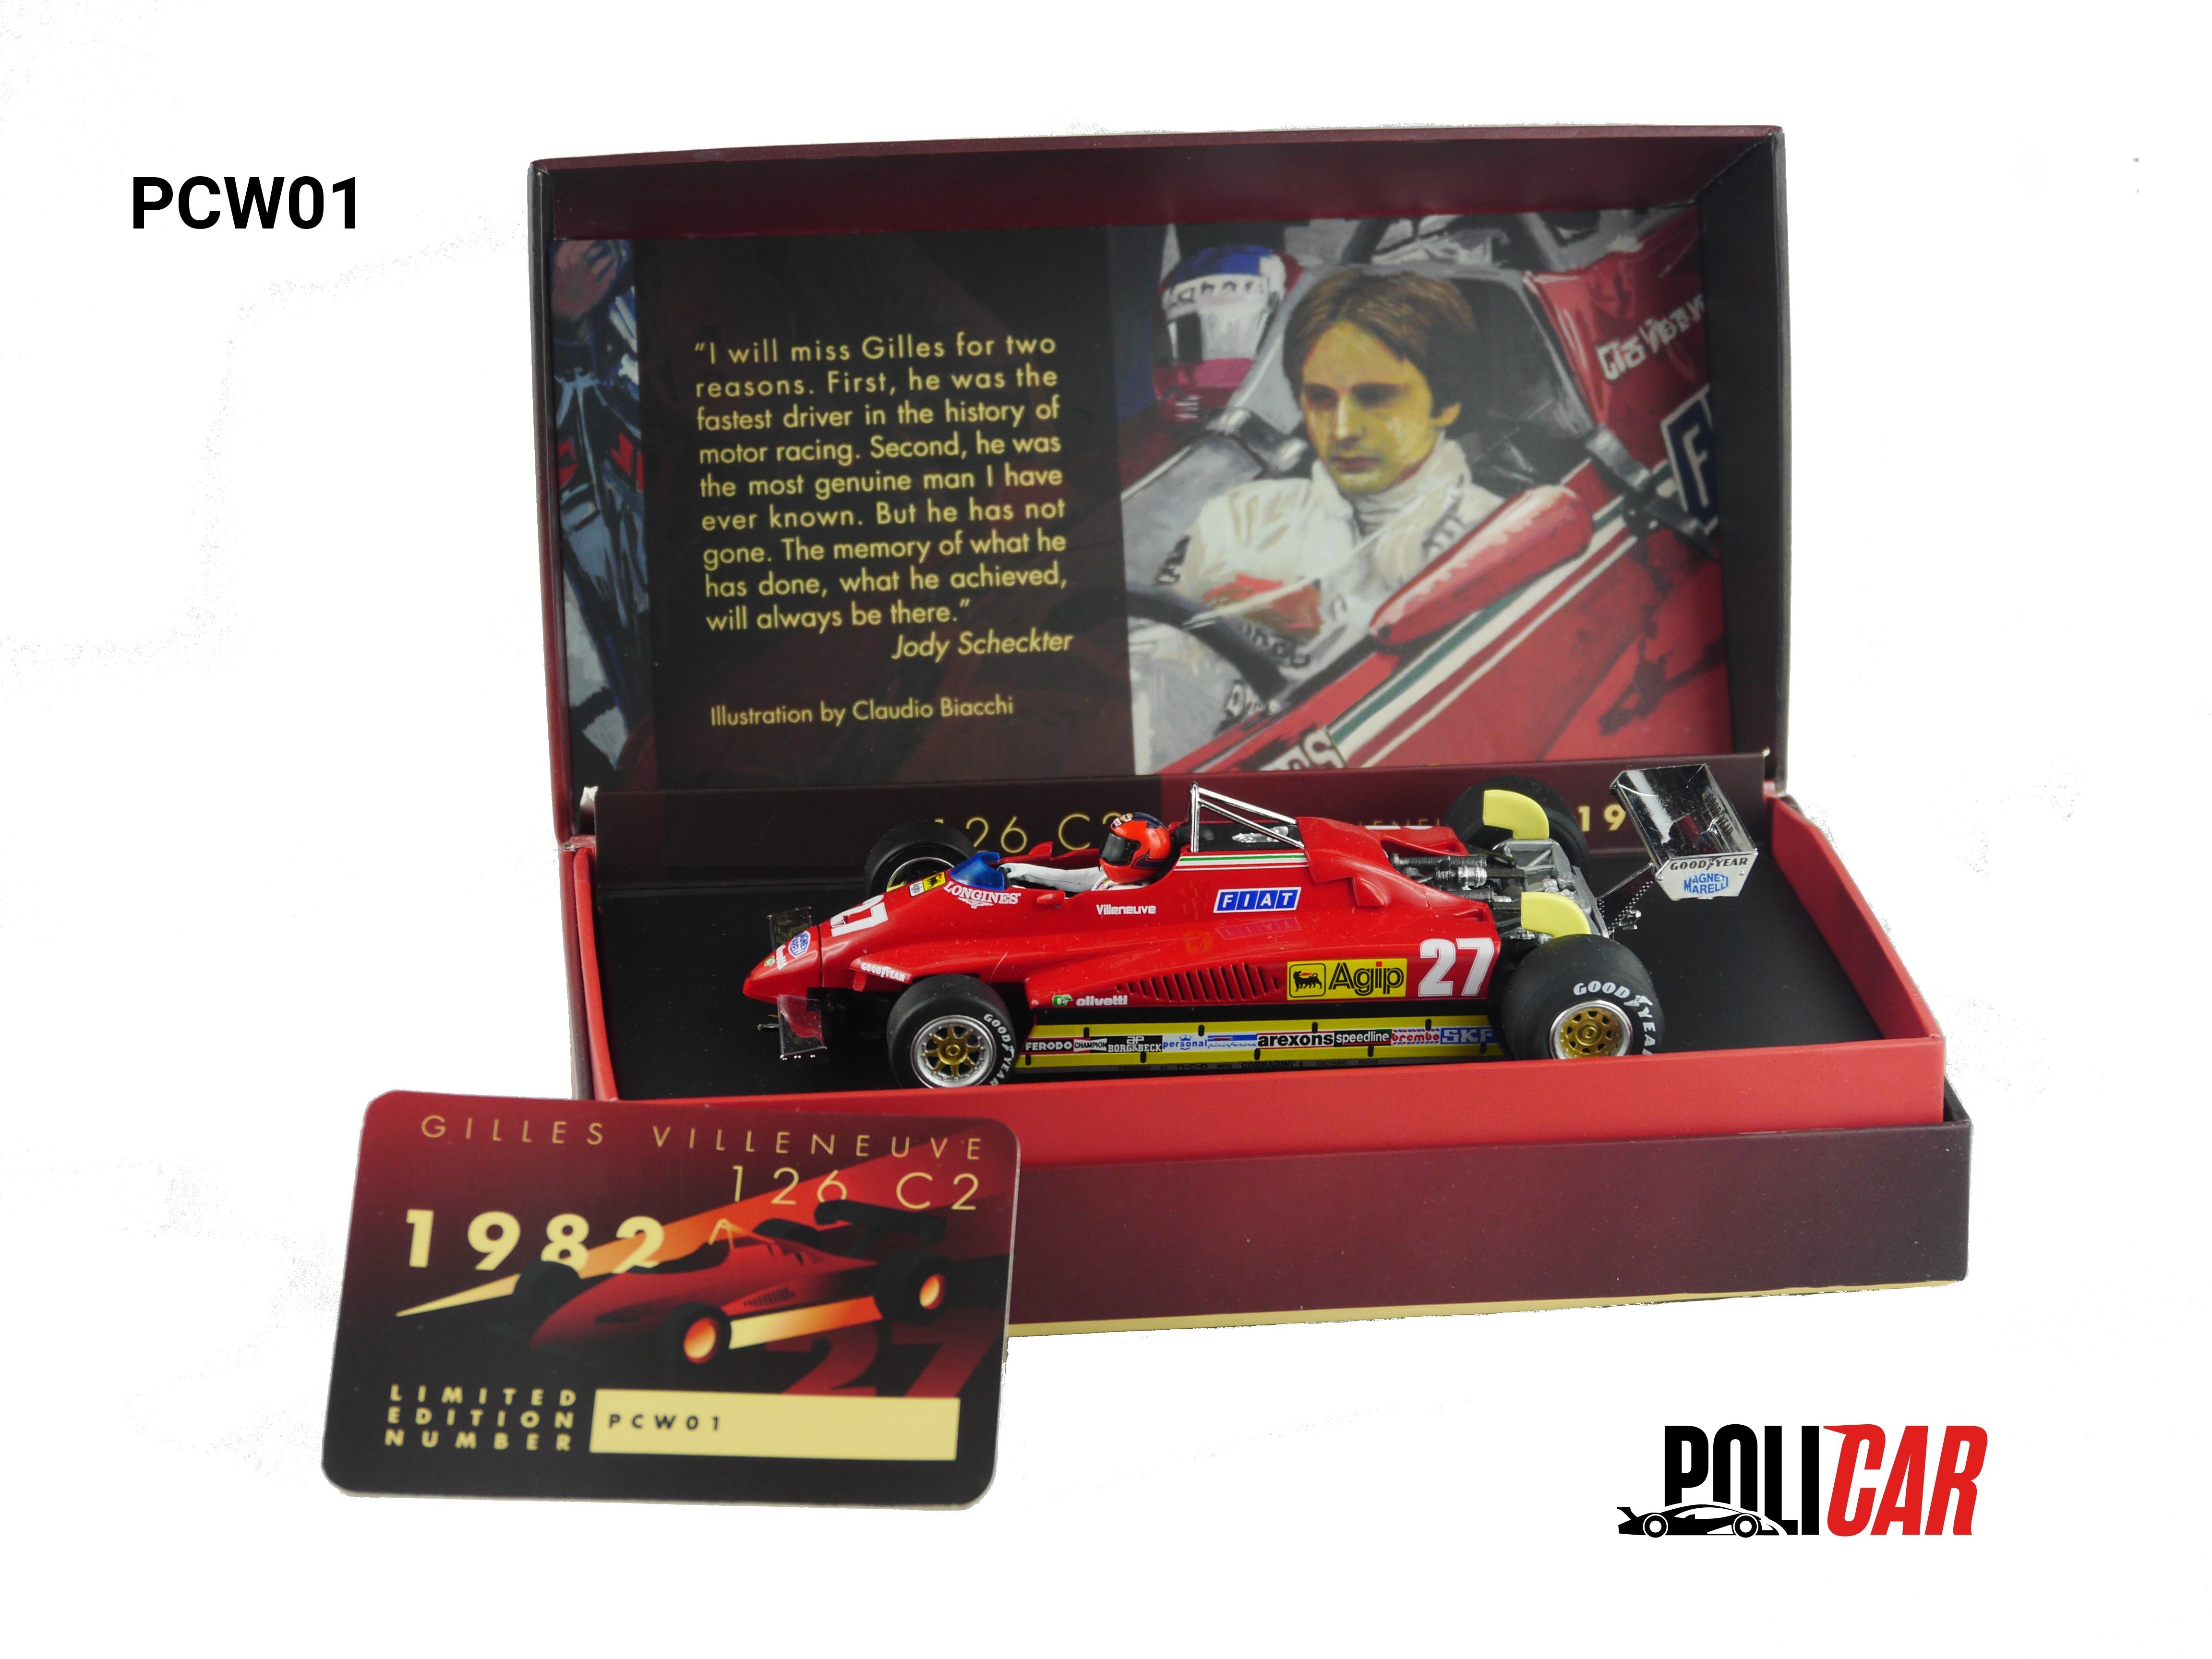 PCW01 Gilles Villeneuve Limited Edition 126 C2 1982.